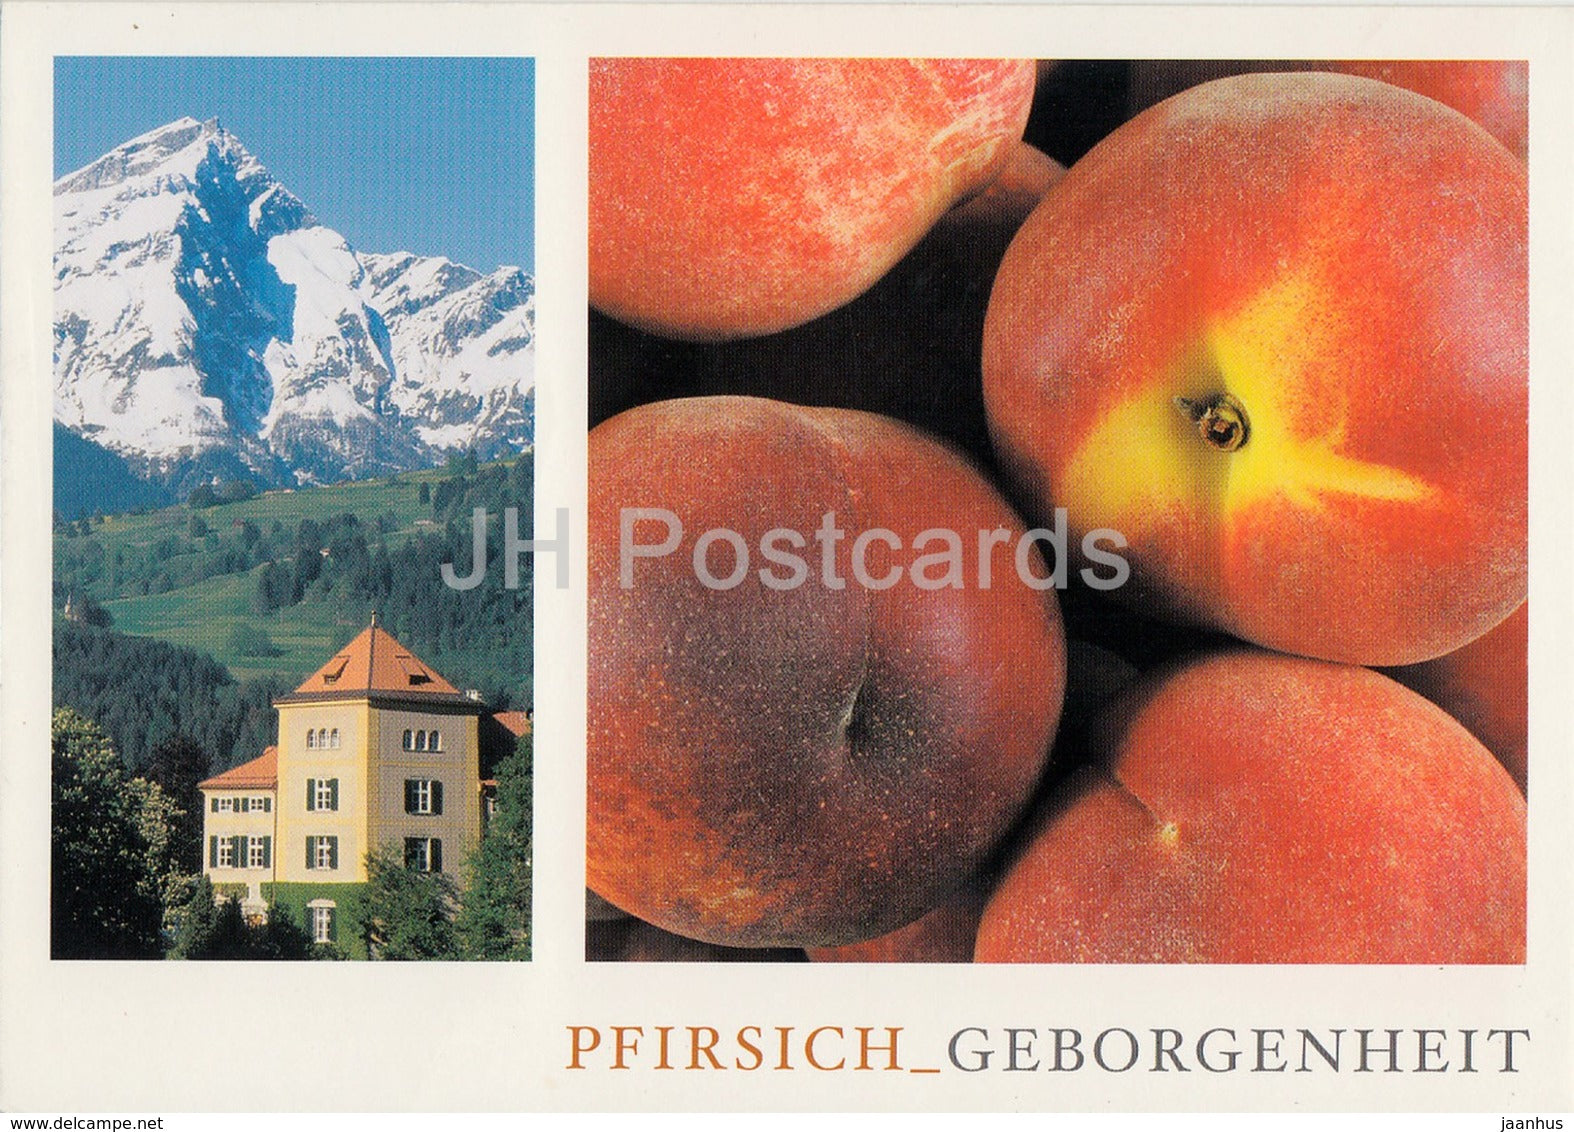 Schauenstein - schloss restaurant hotel - Pfirsich - 2004 - Switzerland - used - JH Postcards